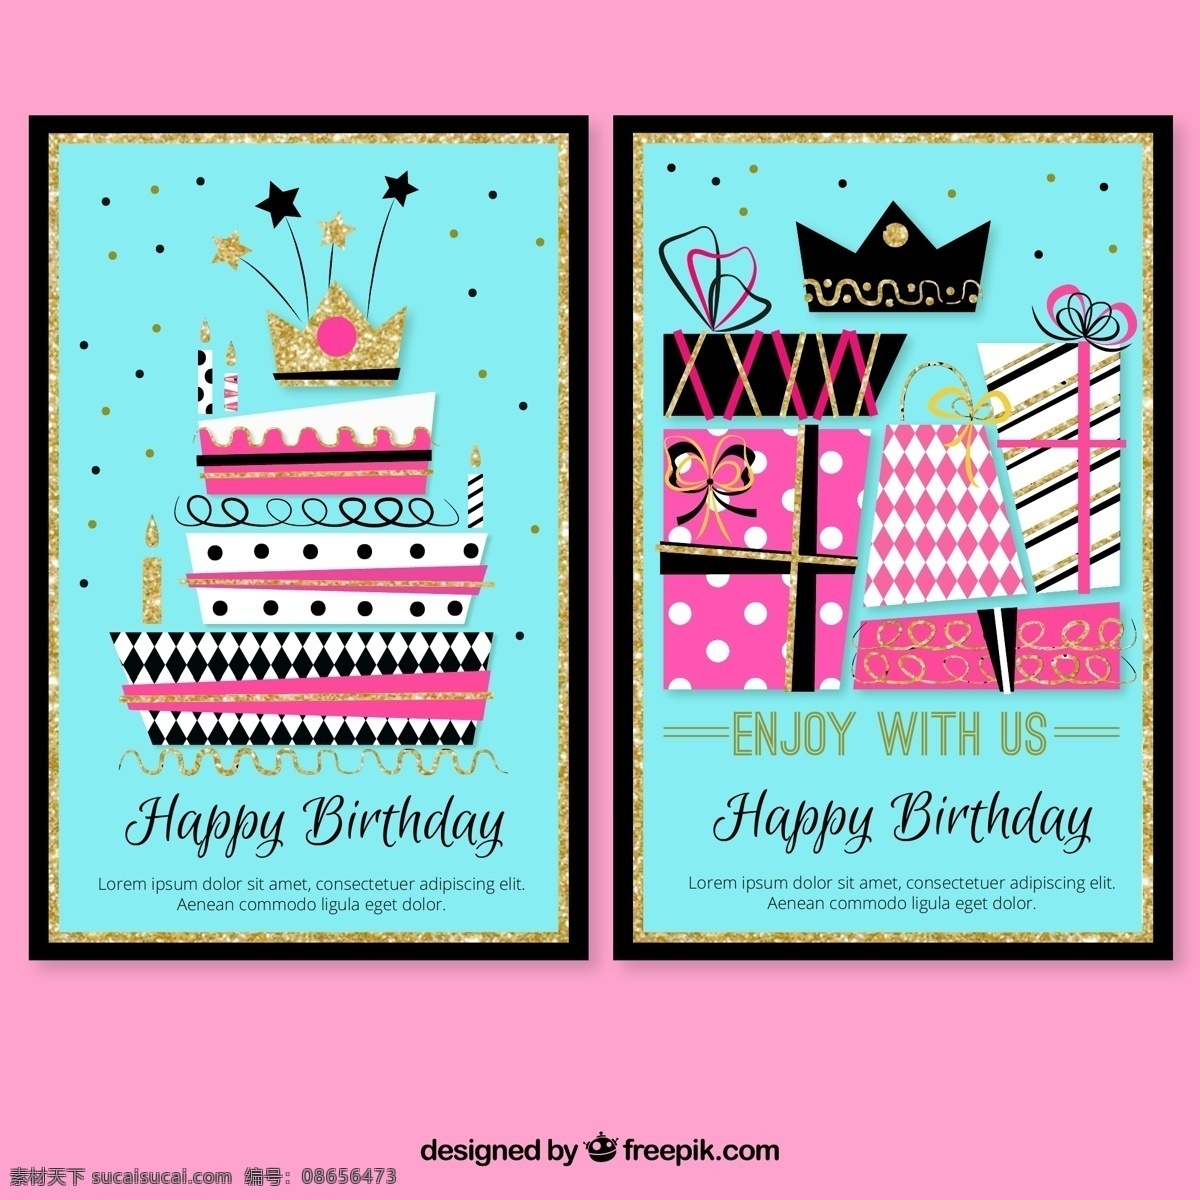 时尚 生日 派对 邀请 卡片 封面 矢量 礼物 礼盒 矢量素材 王冠 彩色 生日蛋糕 卡